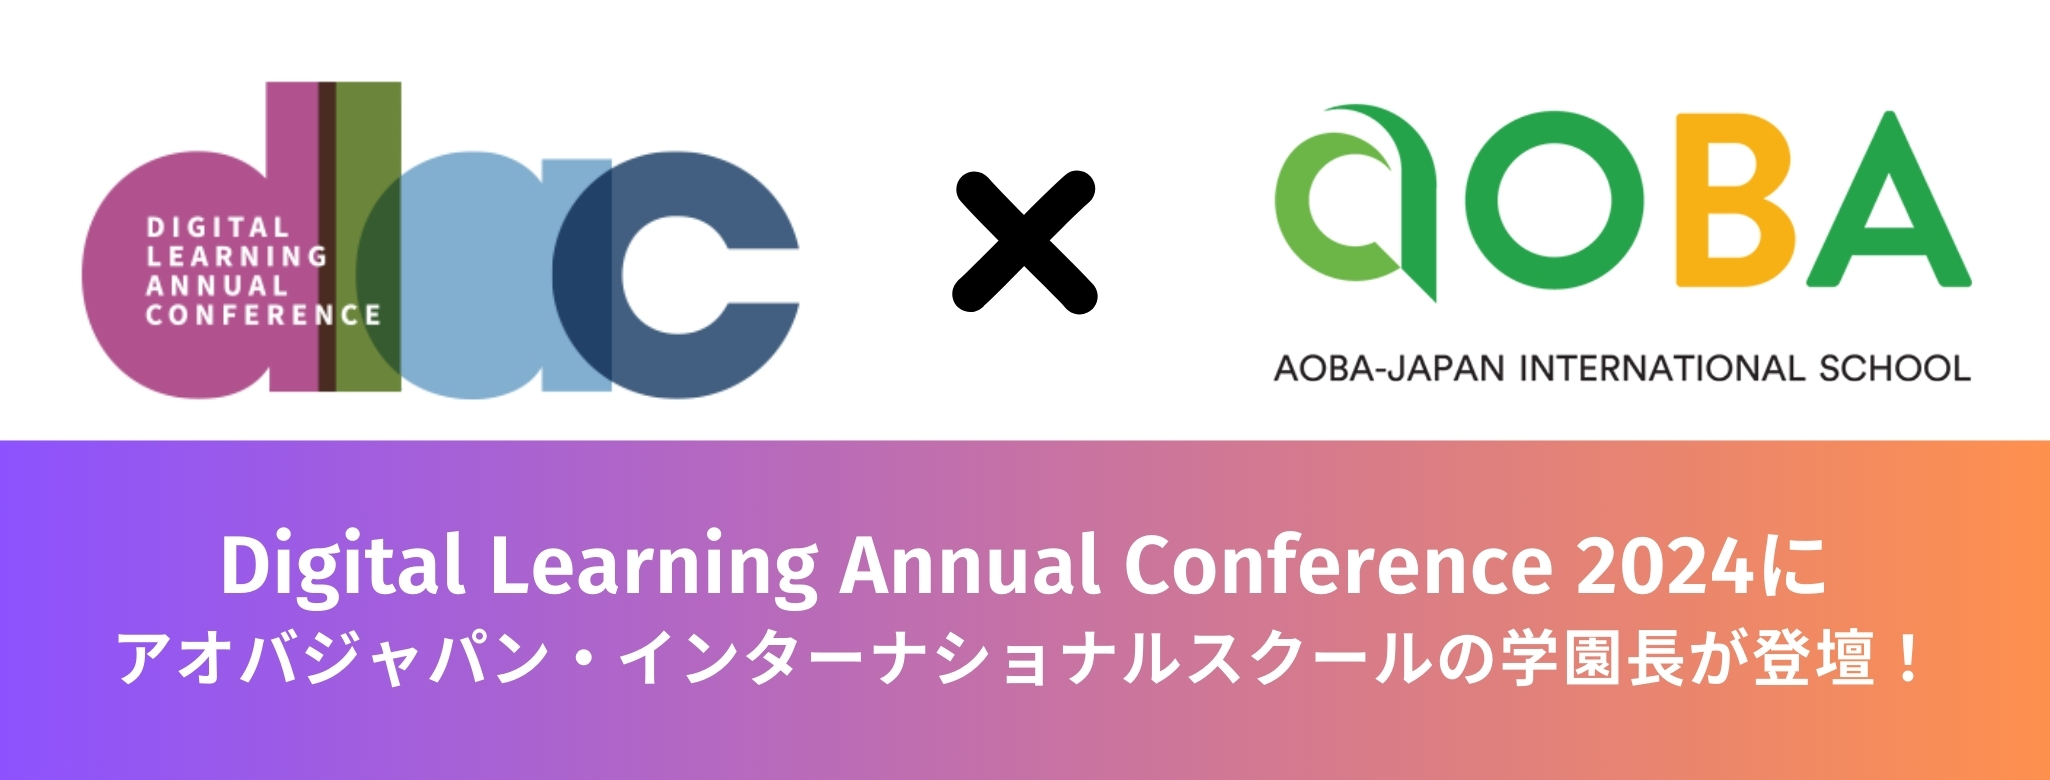 【イベント登壇】Digital Learning Annual Conference2024